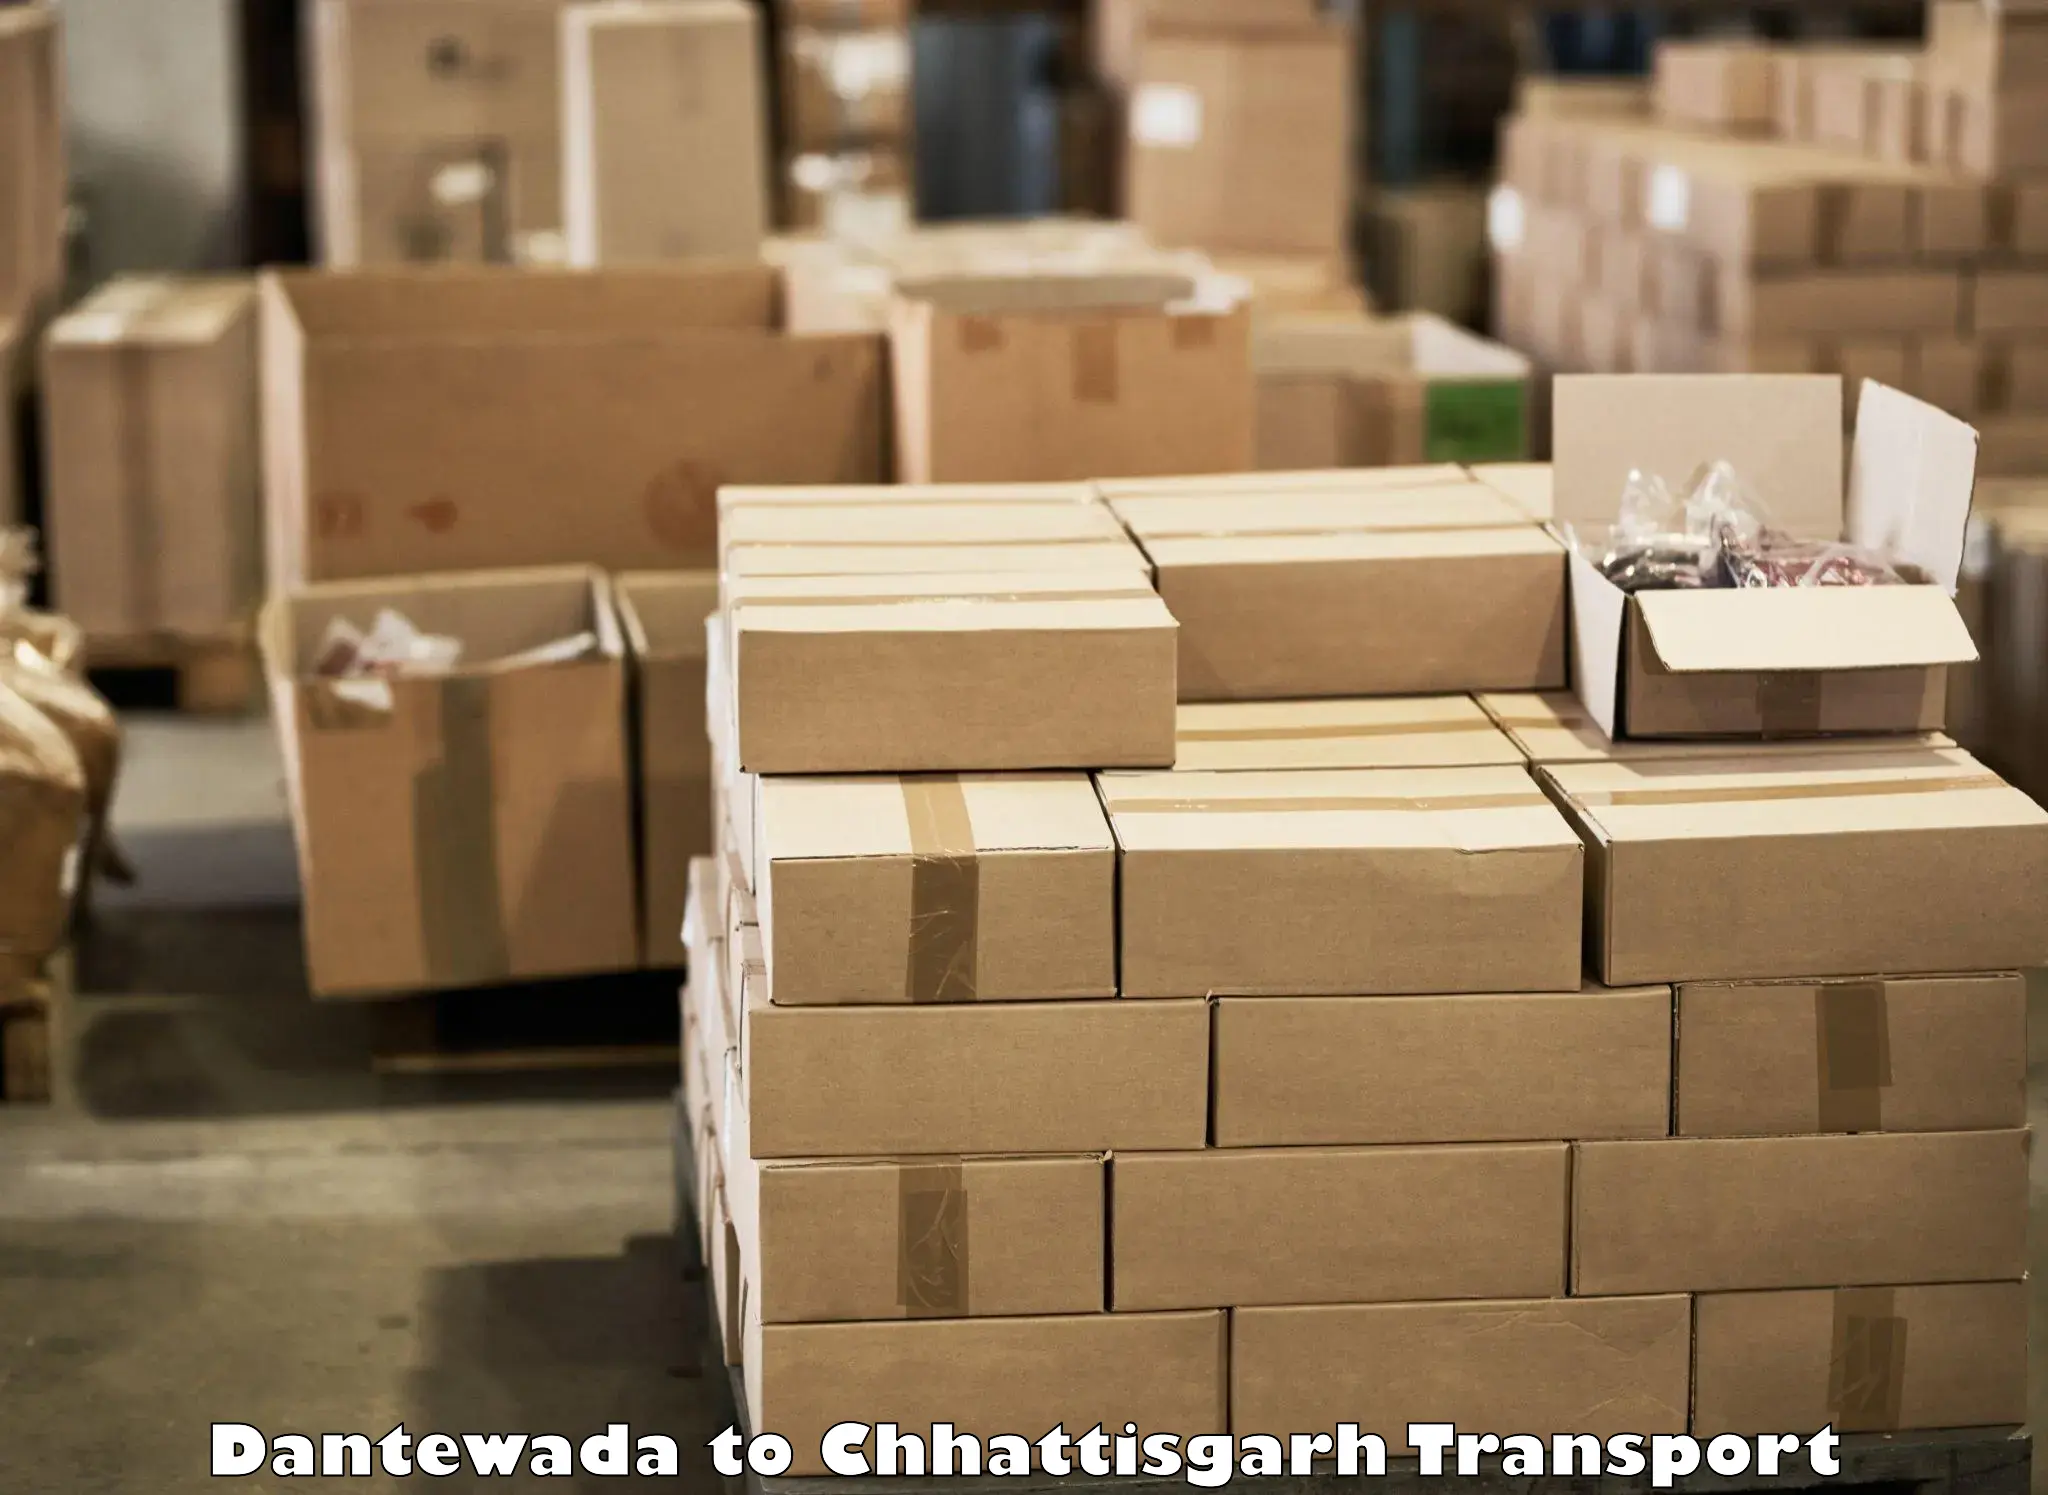 Container transport service Dantewada to Pratappur